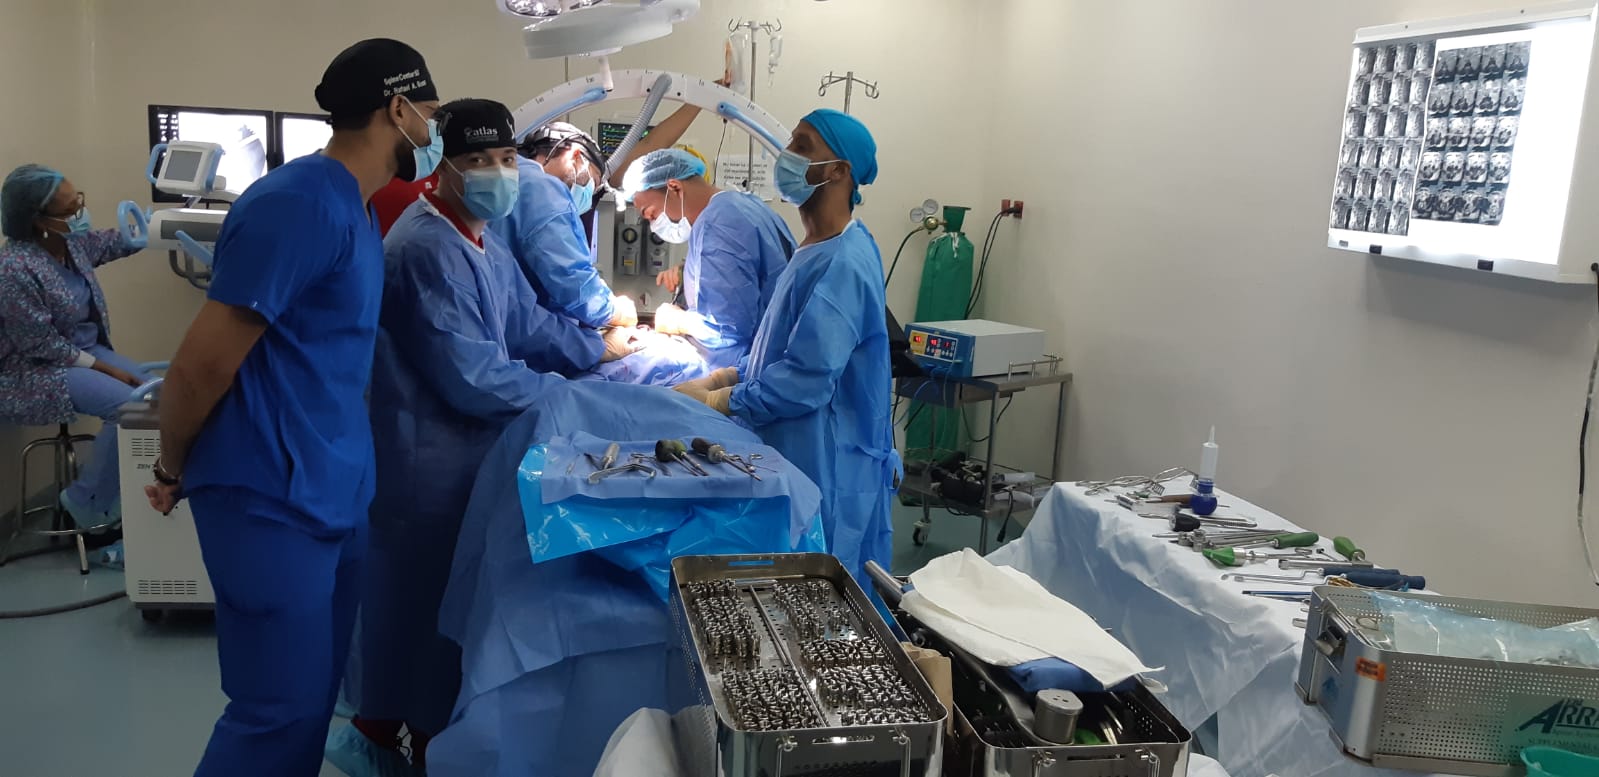 Read more about the article El Hospital Provincial Ricardo Limado y la Fundación Spine Center realizaron jornada quirúrgica.